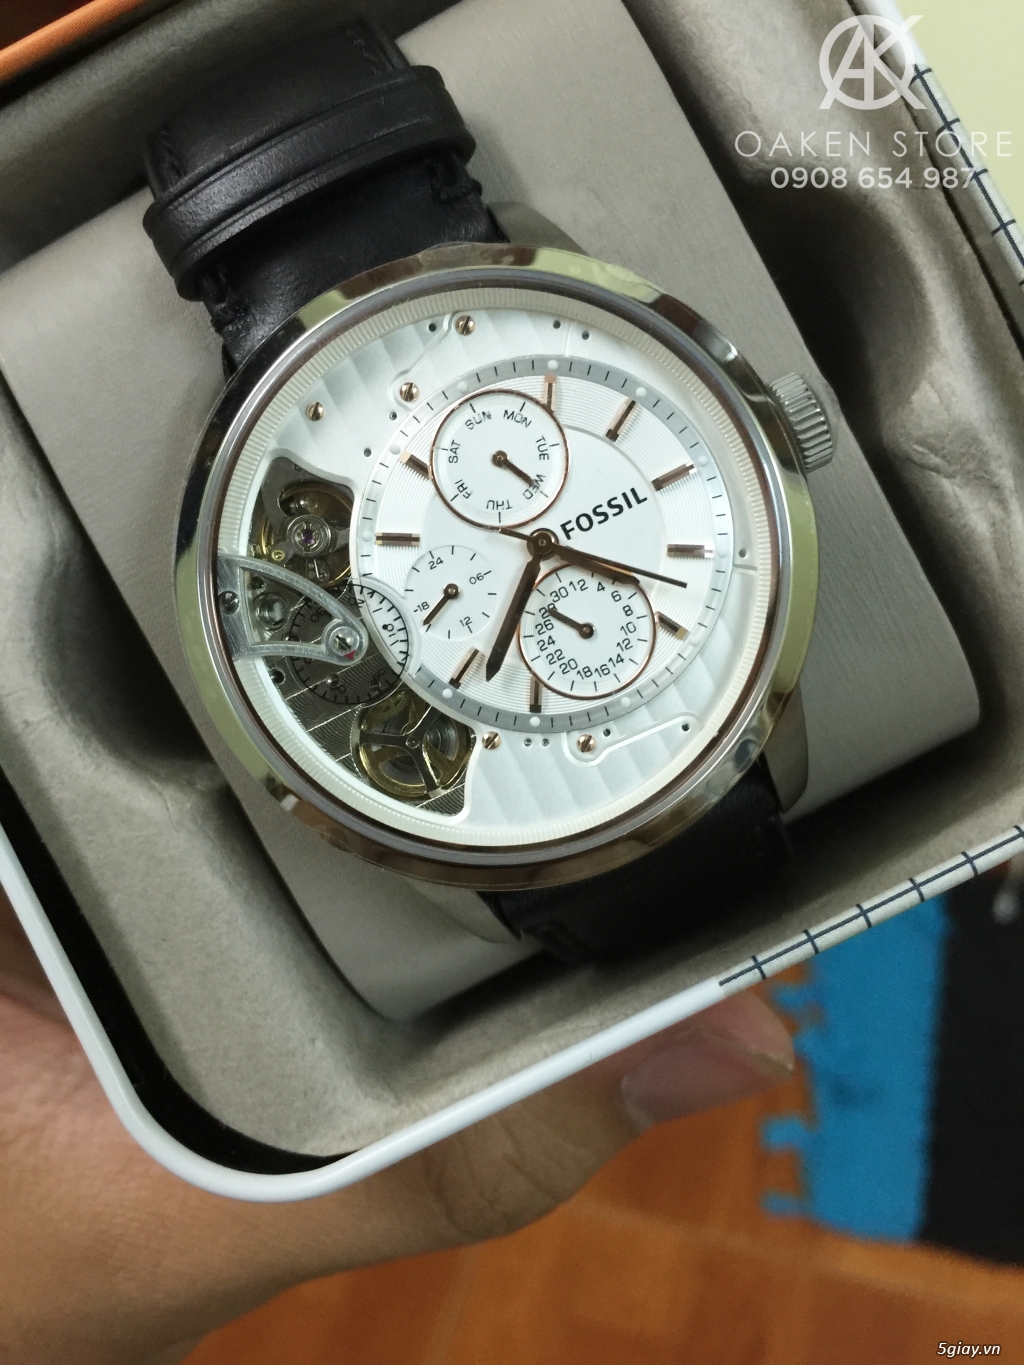 Oaken Store - Đồng hồ chính hãng xách tay giá tốt - 6